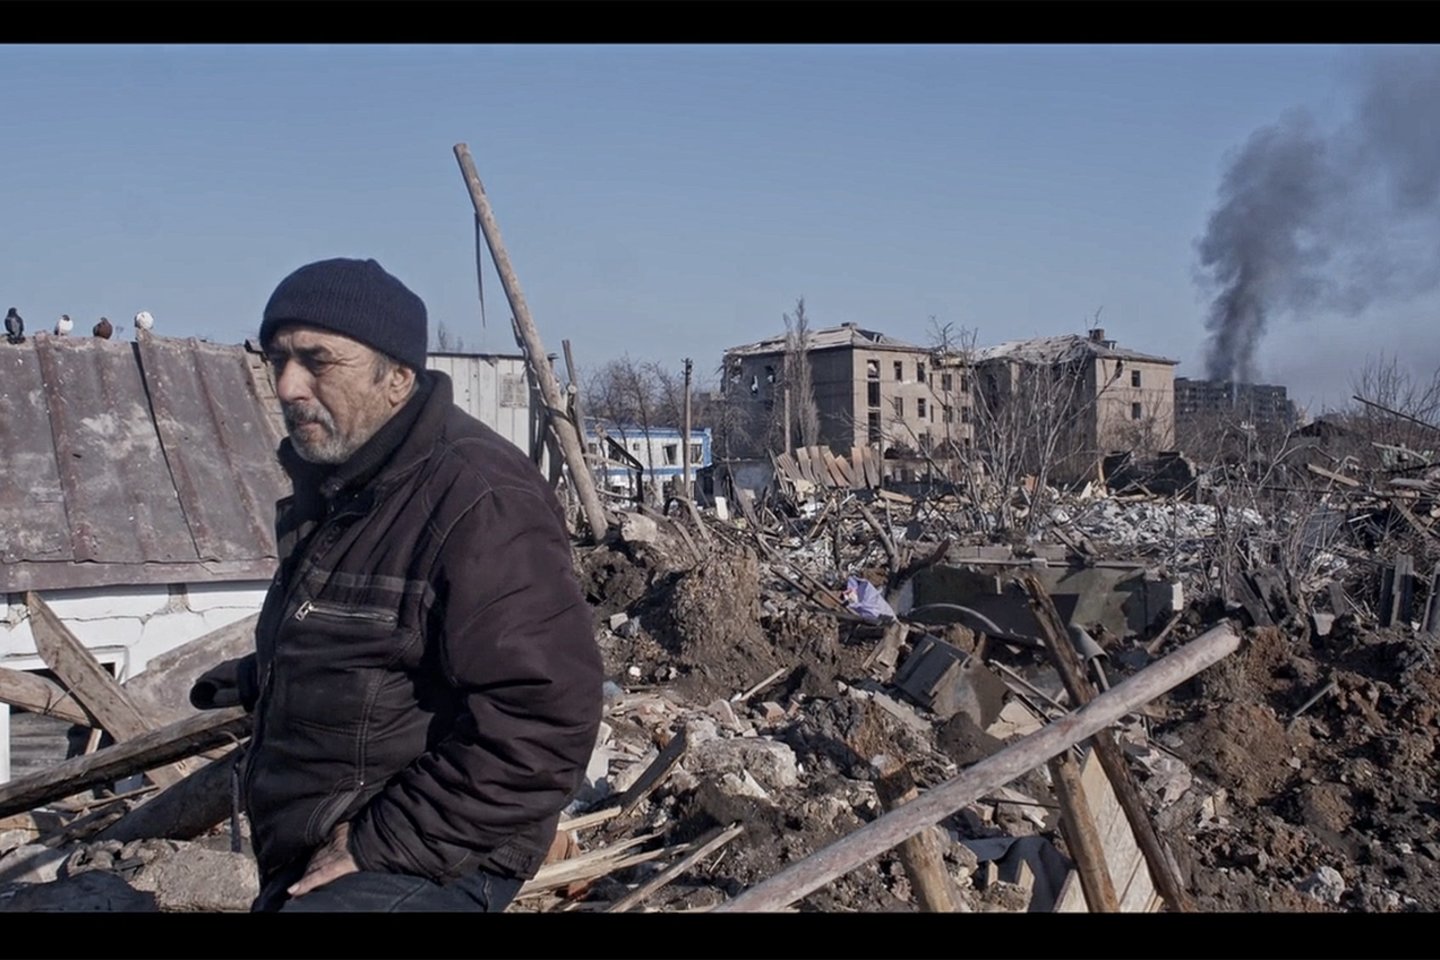 Kanų festivalio specialųjį dokumentinio kino prizą pelnęs ir geriausiu dokumentiniu filmu Europos kino apdovanojimuose pripažintas „Mariupolis 2“ yra antrasis M.Kvedaravičiaus filmas apie karo išgyvenimus šiame mieste.